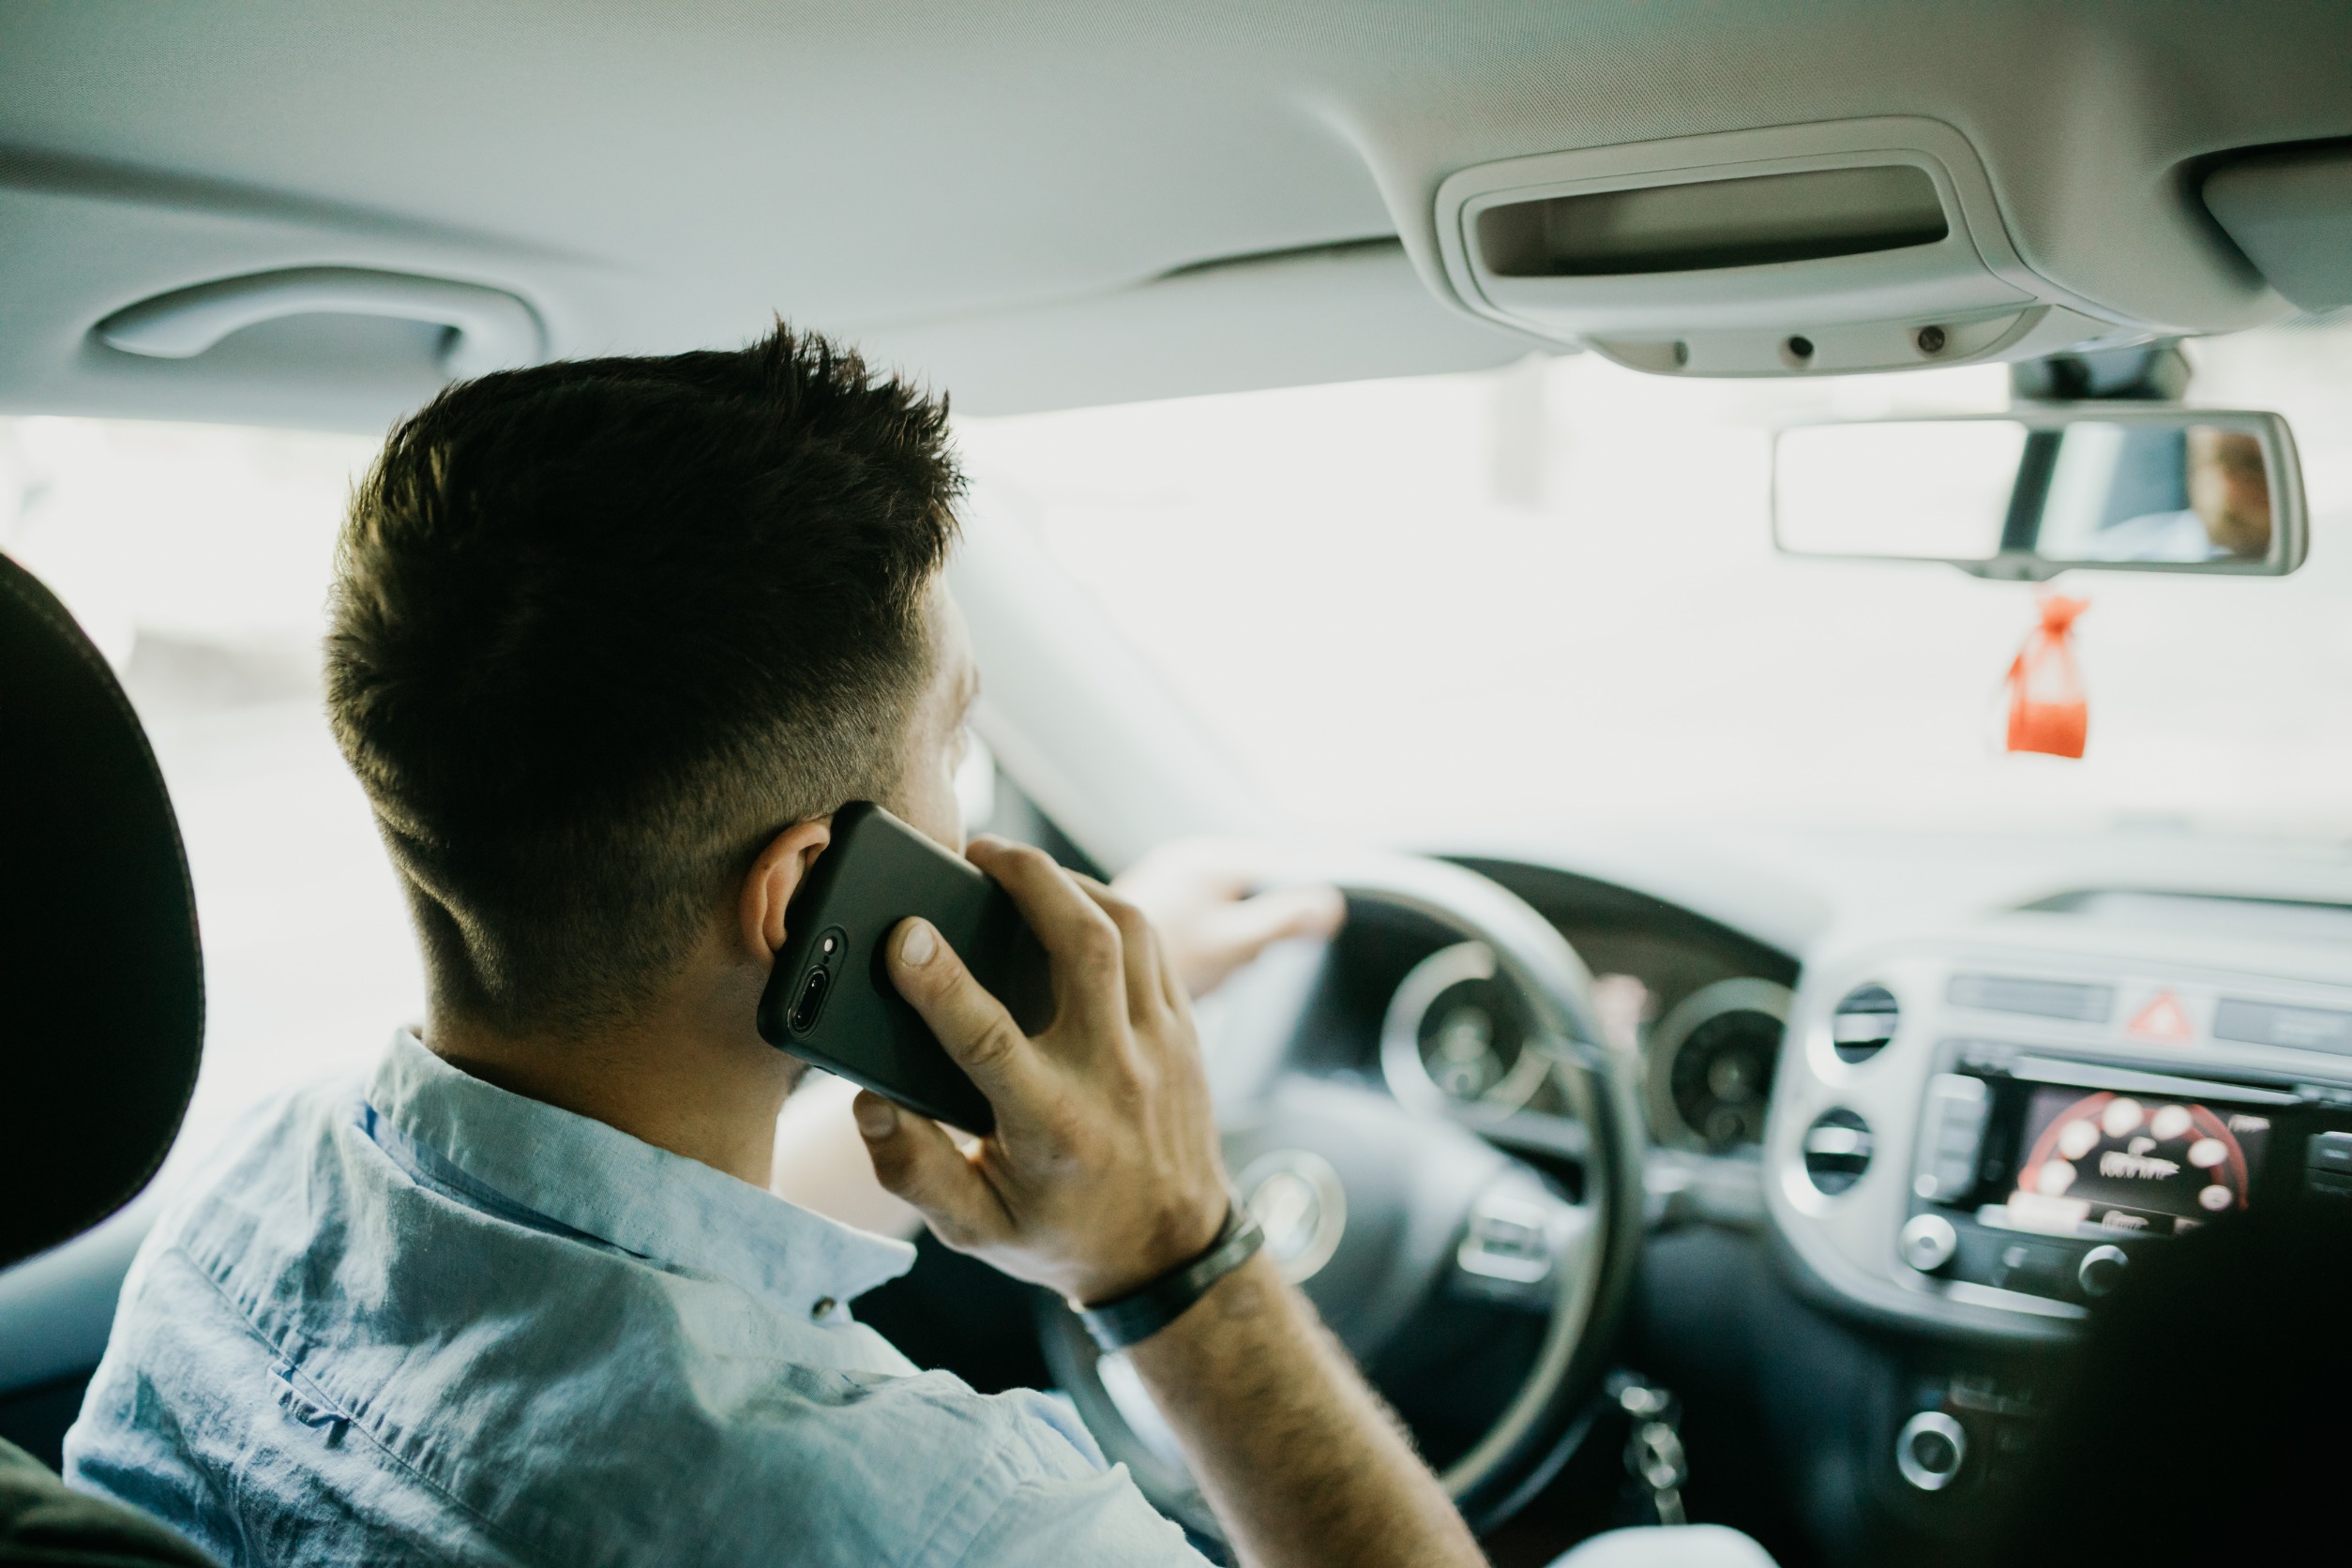 Wat is het boetebedrag voor het vasthouden van een telefoon tijdens het autorijden? 15